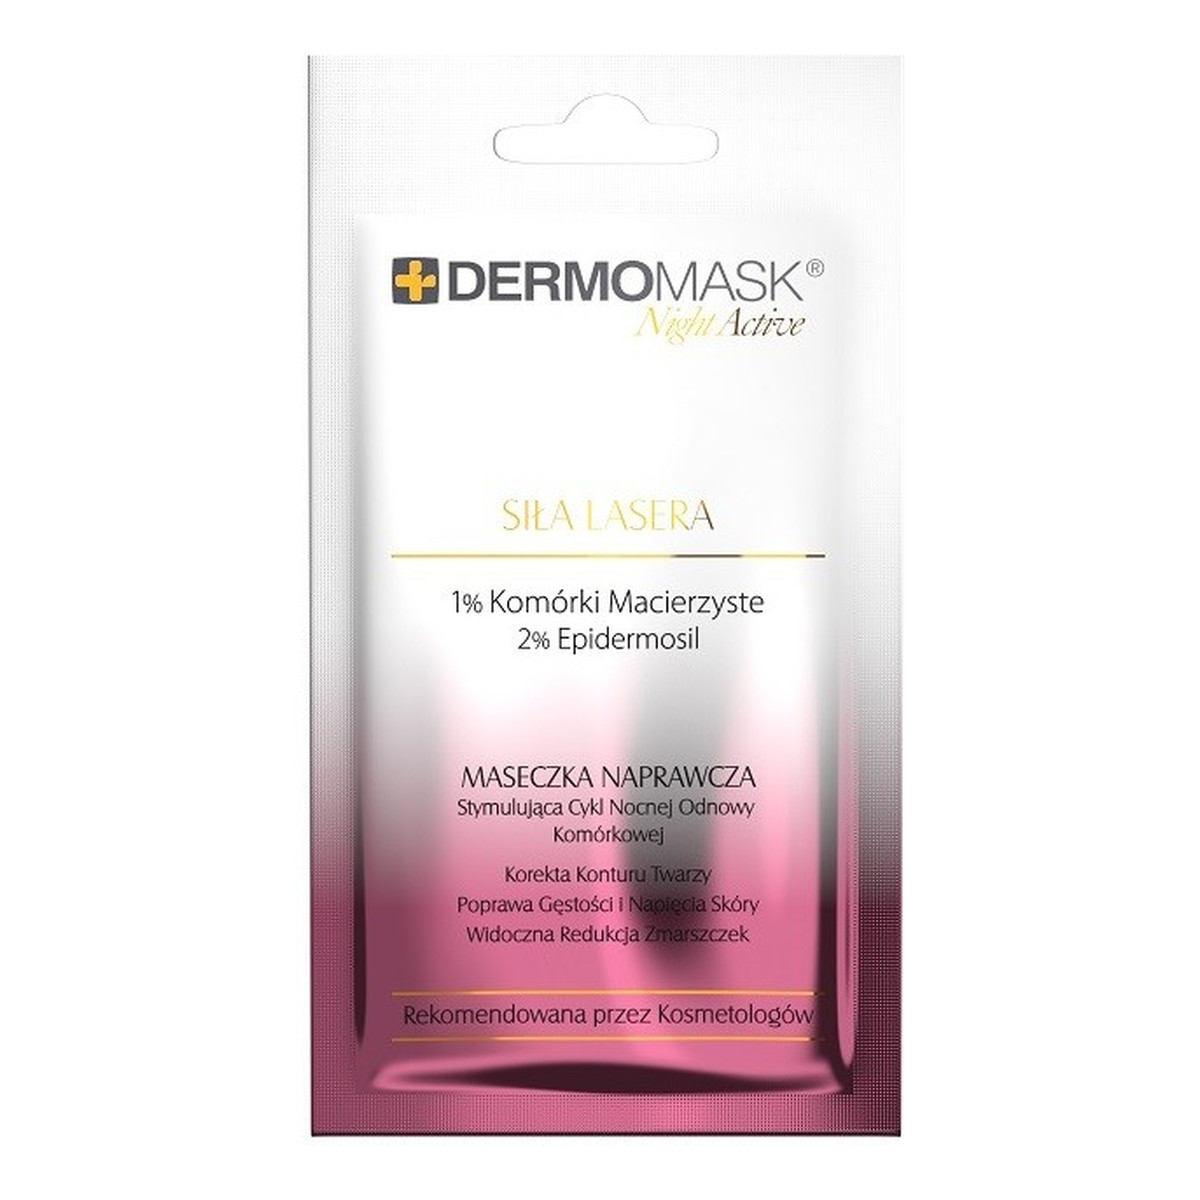 Lbiotica / Biovax Dermomask Night Active Maseczka naprawcza na twarz - Siła Lasera 12ml